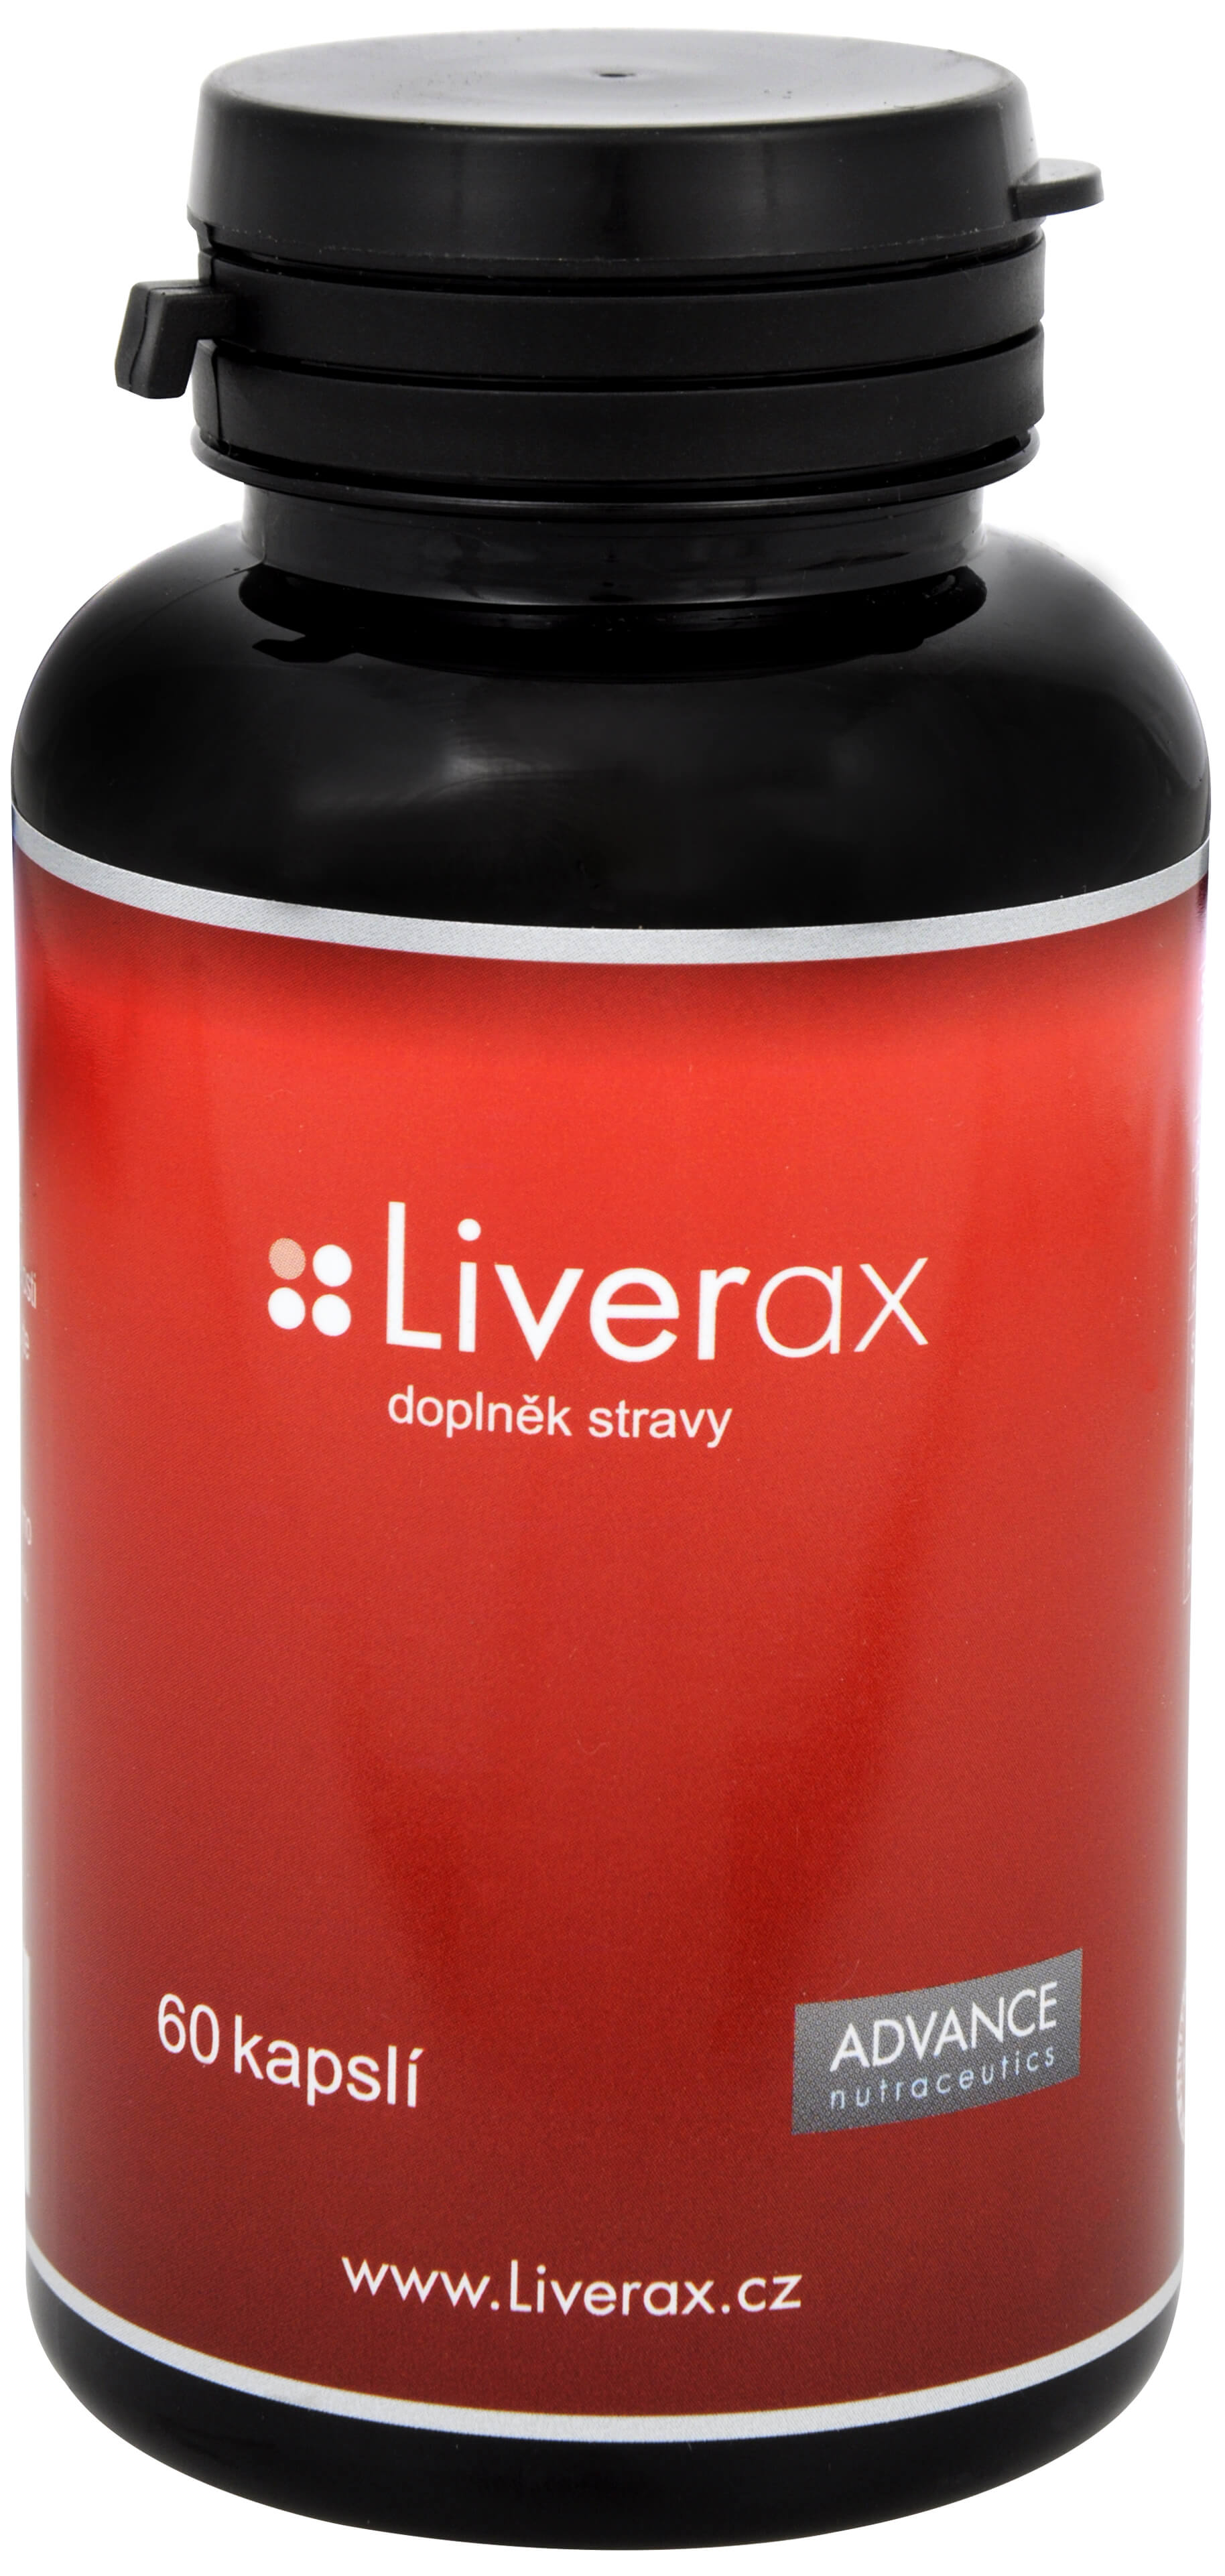 Zobrazit detail výrobku Advance nutraceutics Liverax 60 kapslí